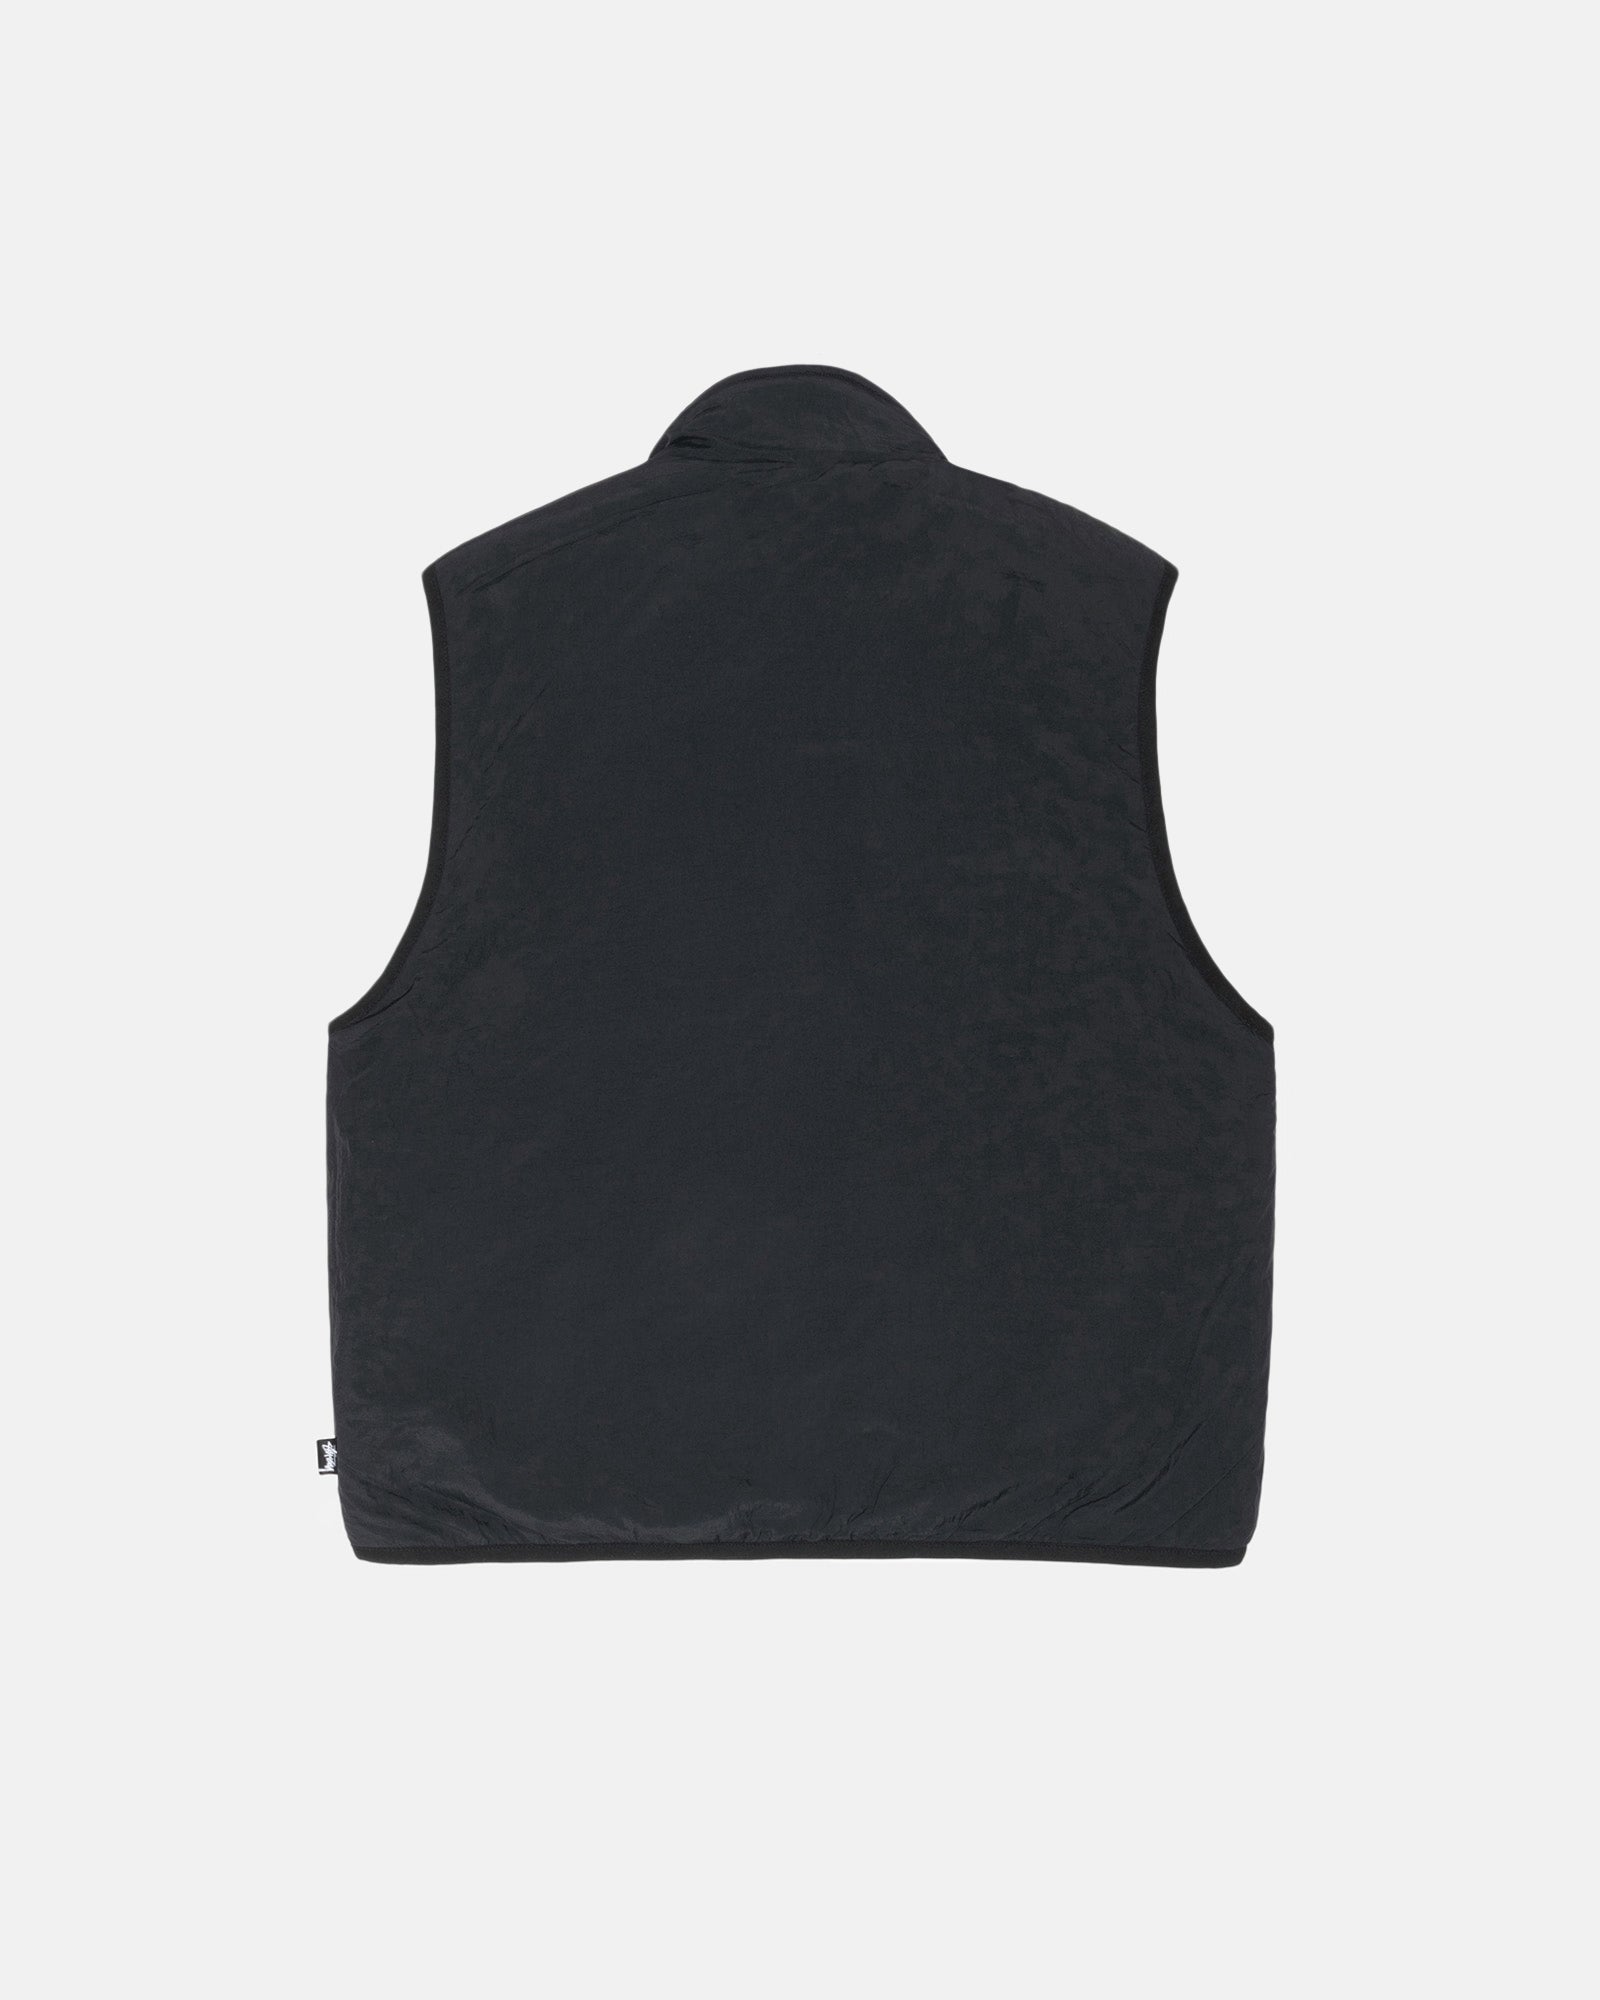 Stüssy Sherpa Reversible Vest Beige Outerwear